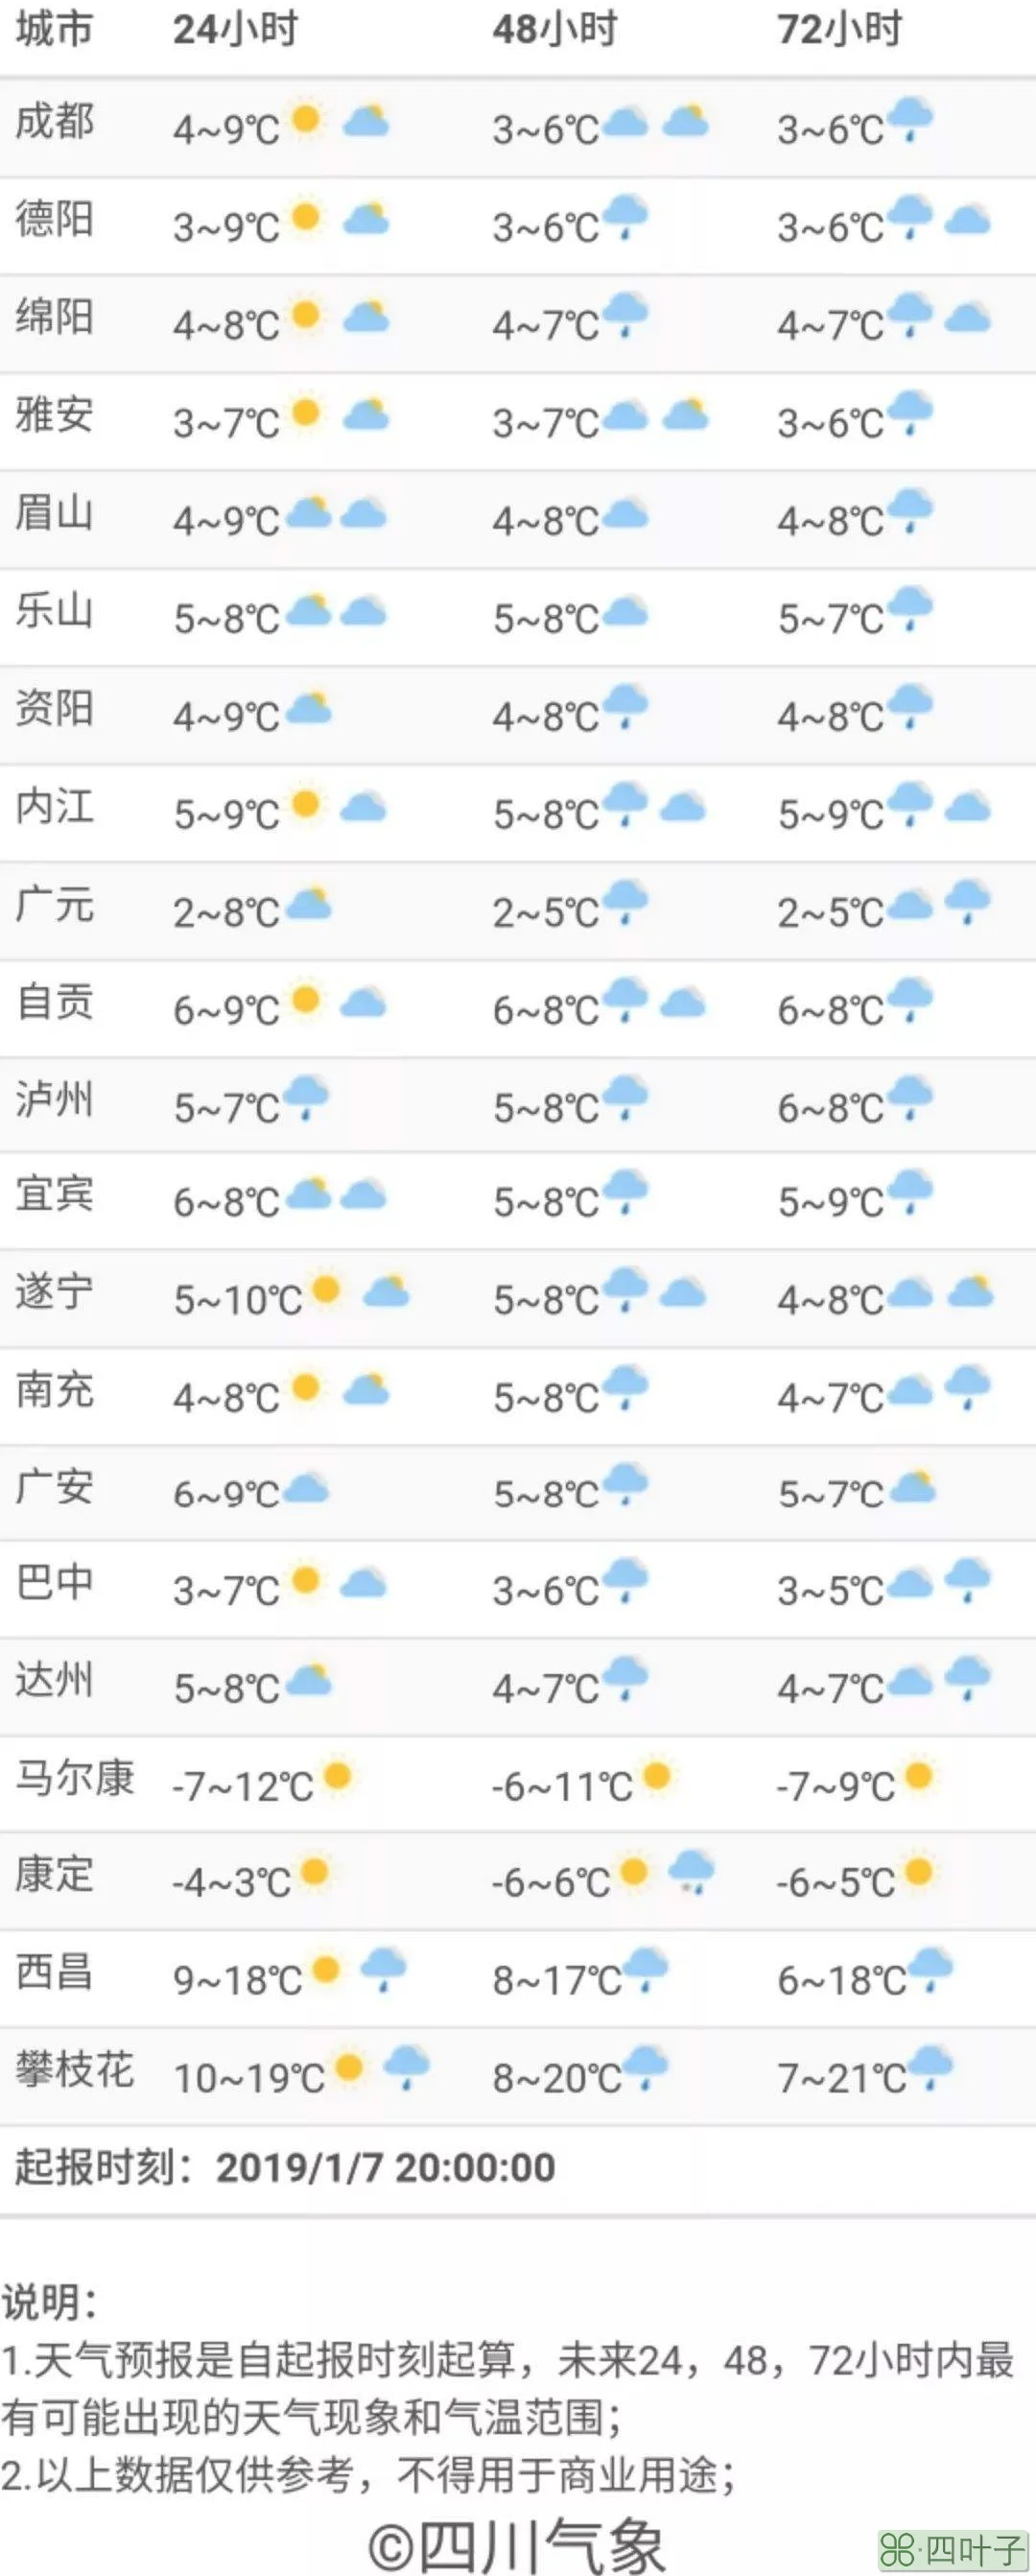 南昌市天气预报15天气预报明天24小时天气预报南昌疫情